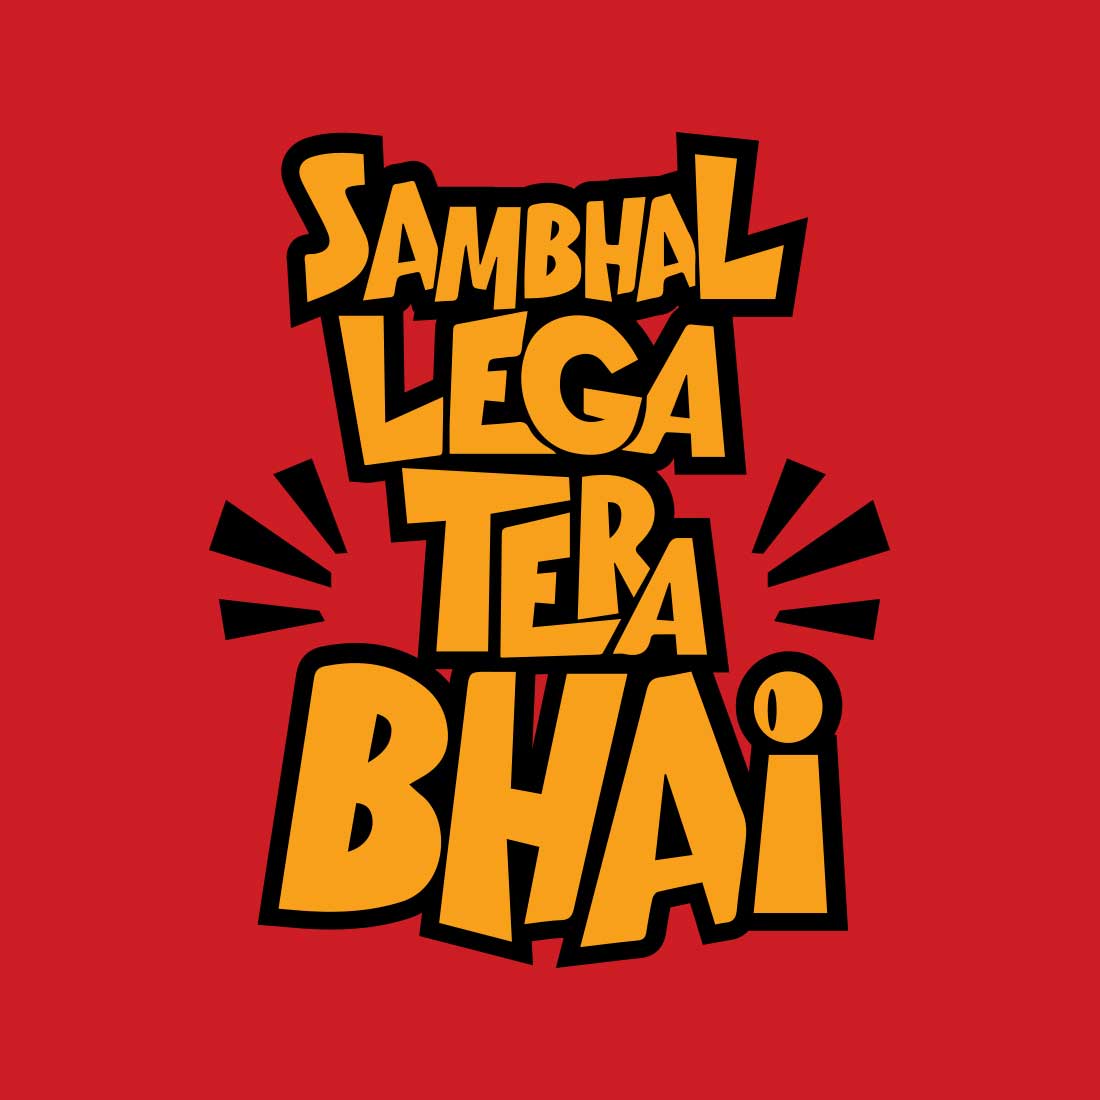 Shambhal Lega Tera Bhai  Red Men T-Shirt